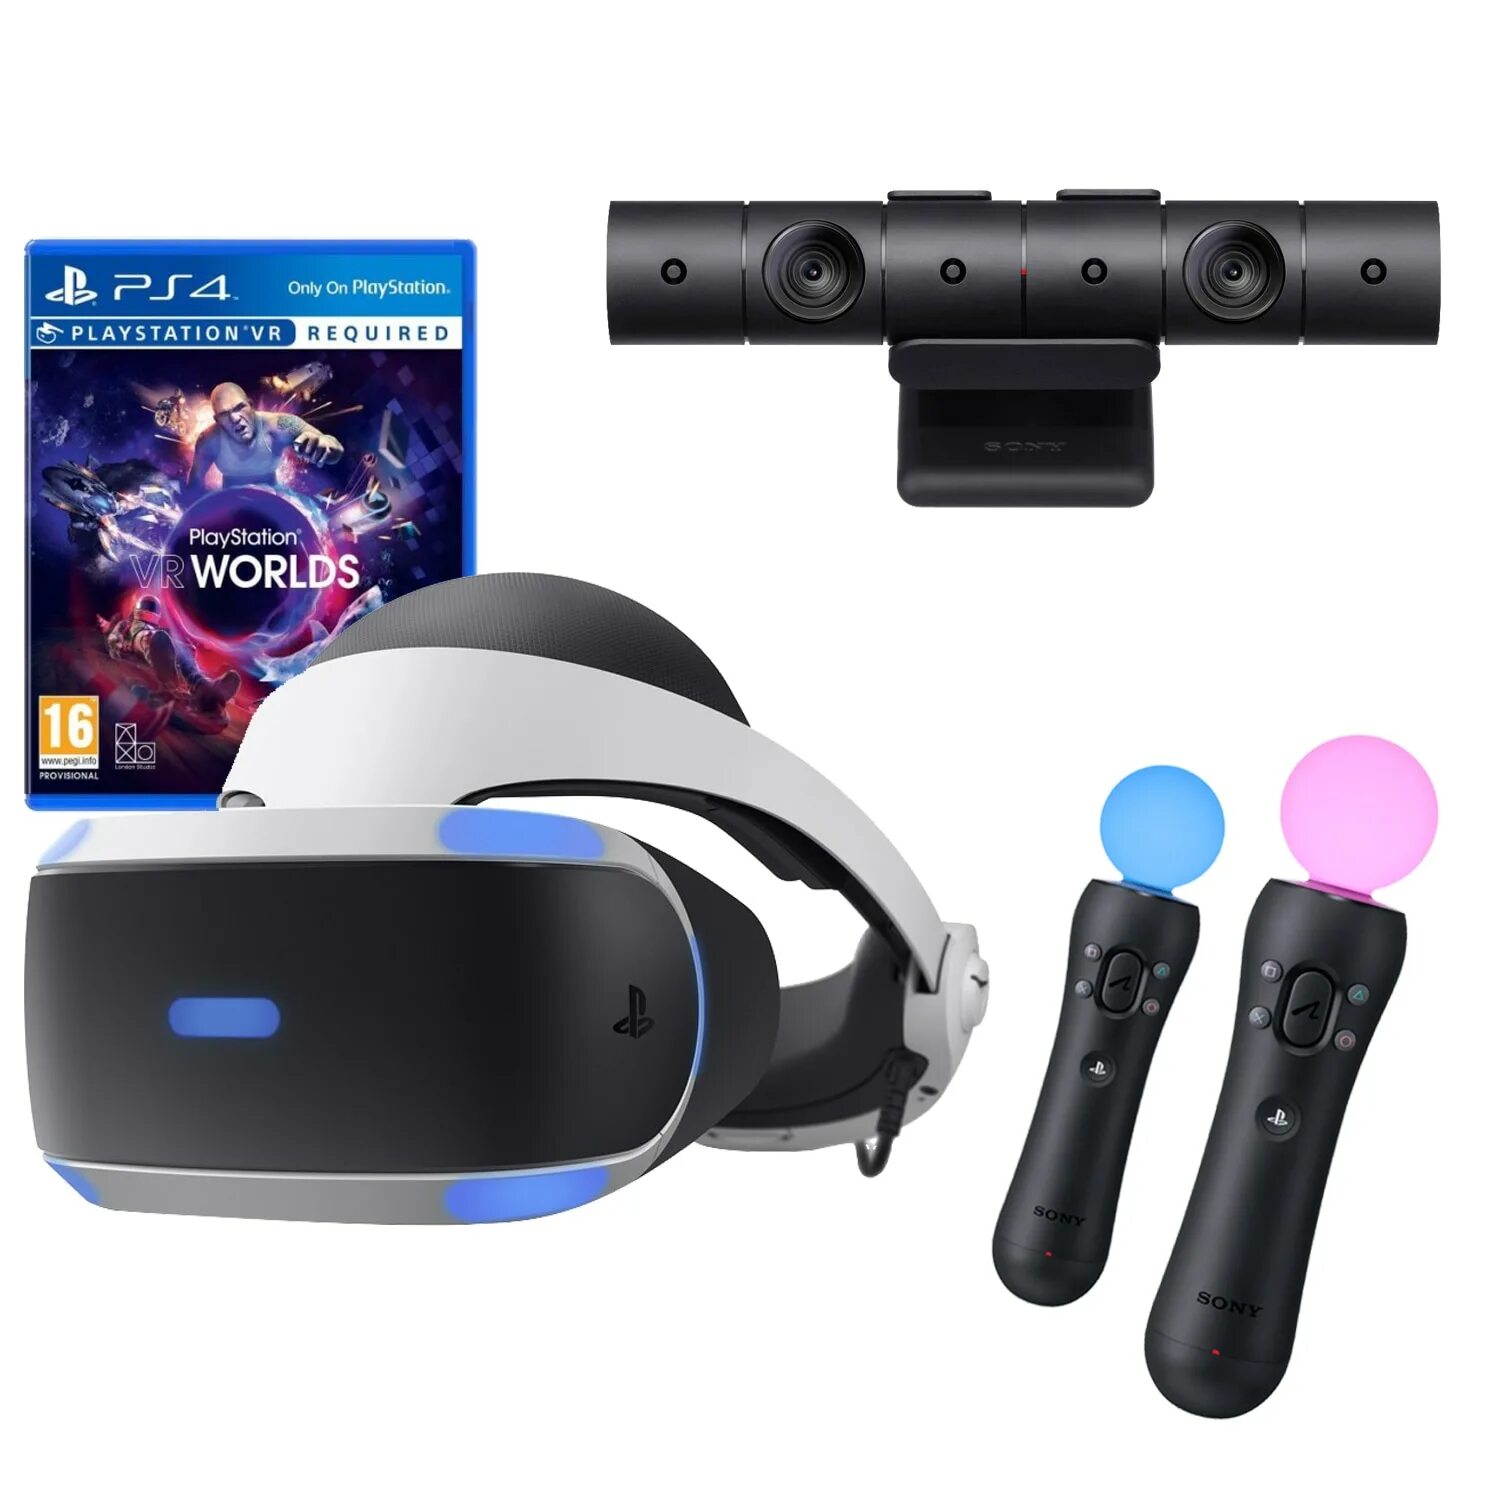 Sony PLAYSTATION VR v2. Плейстейшен 4 VR. PLAYSTATION VR v2 комплект. VR шлем плейстейшен 4. Очки реальности ps4